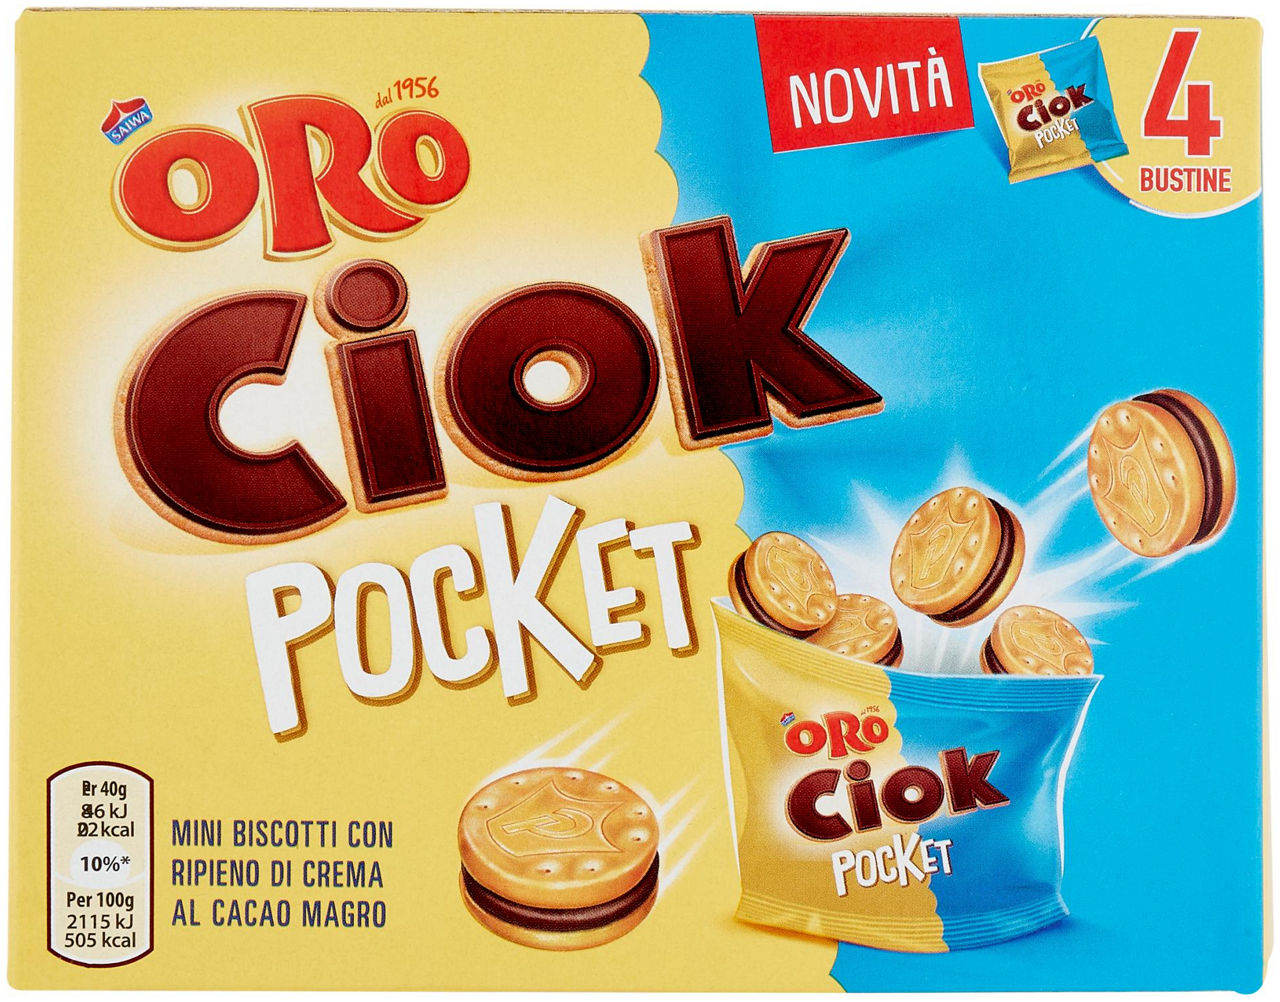 Pocket mini biscotti ripieni di crema al cacao magro - 4 x 40 g